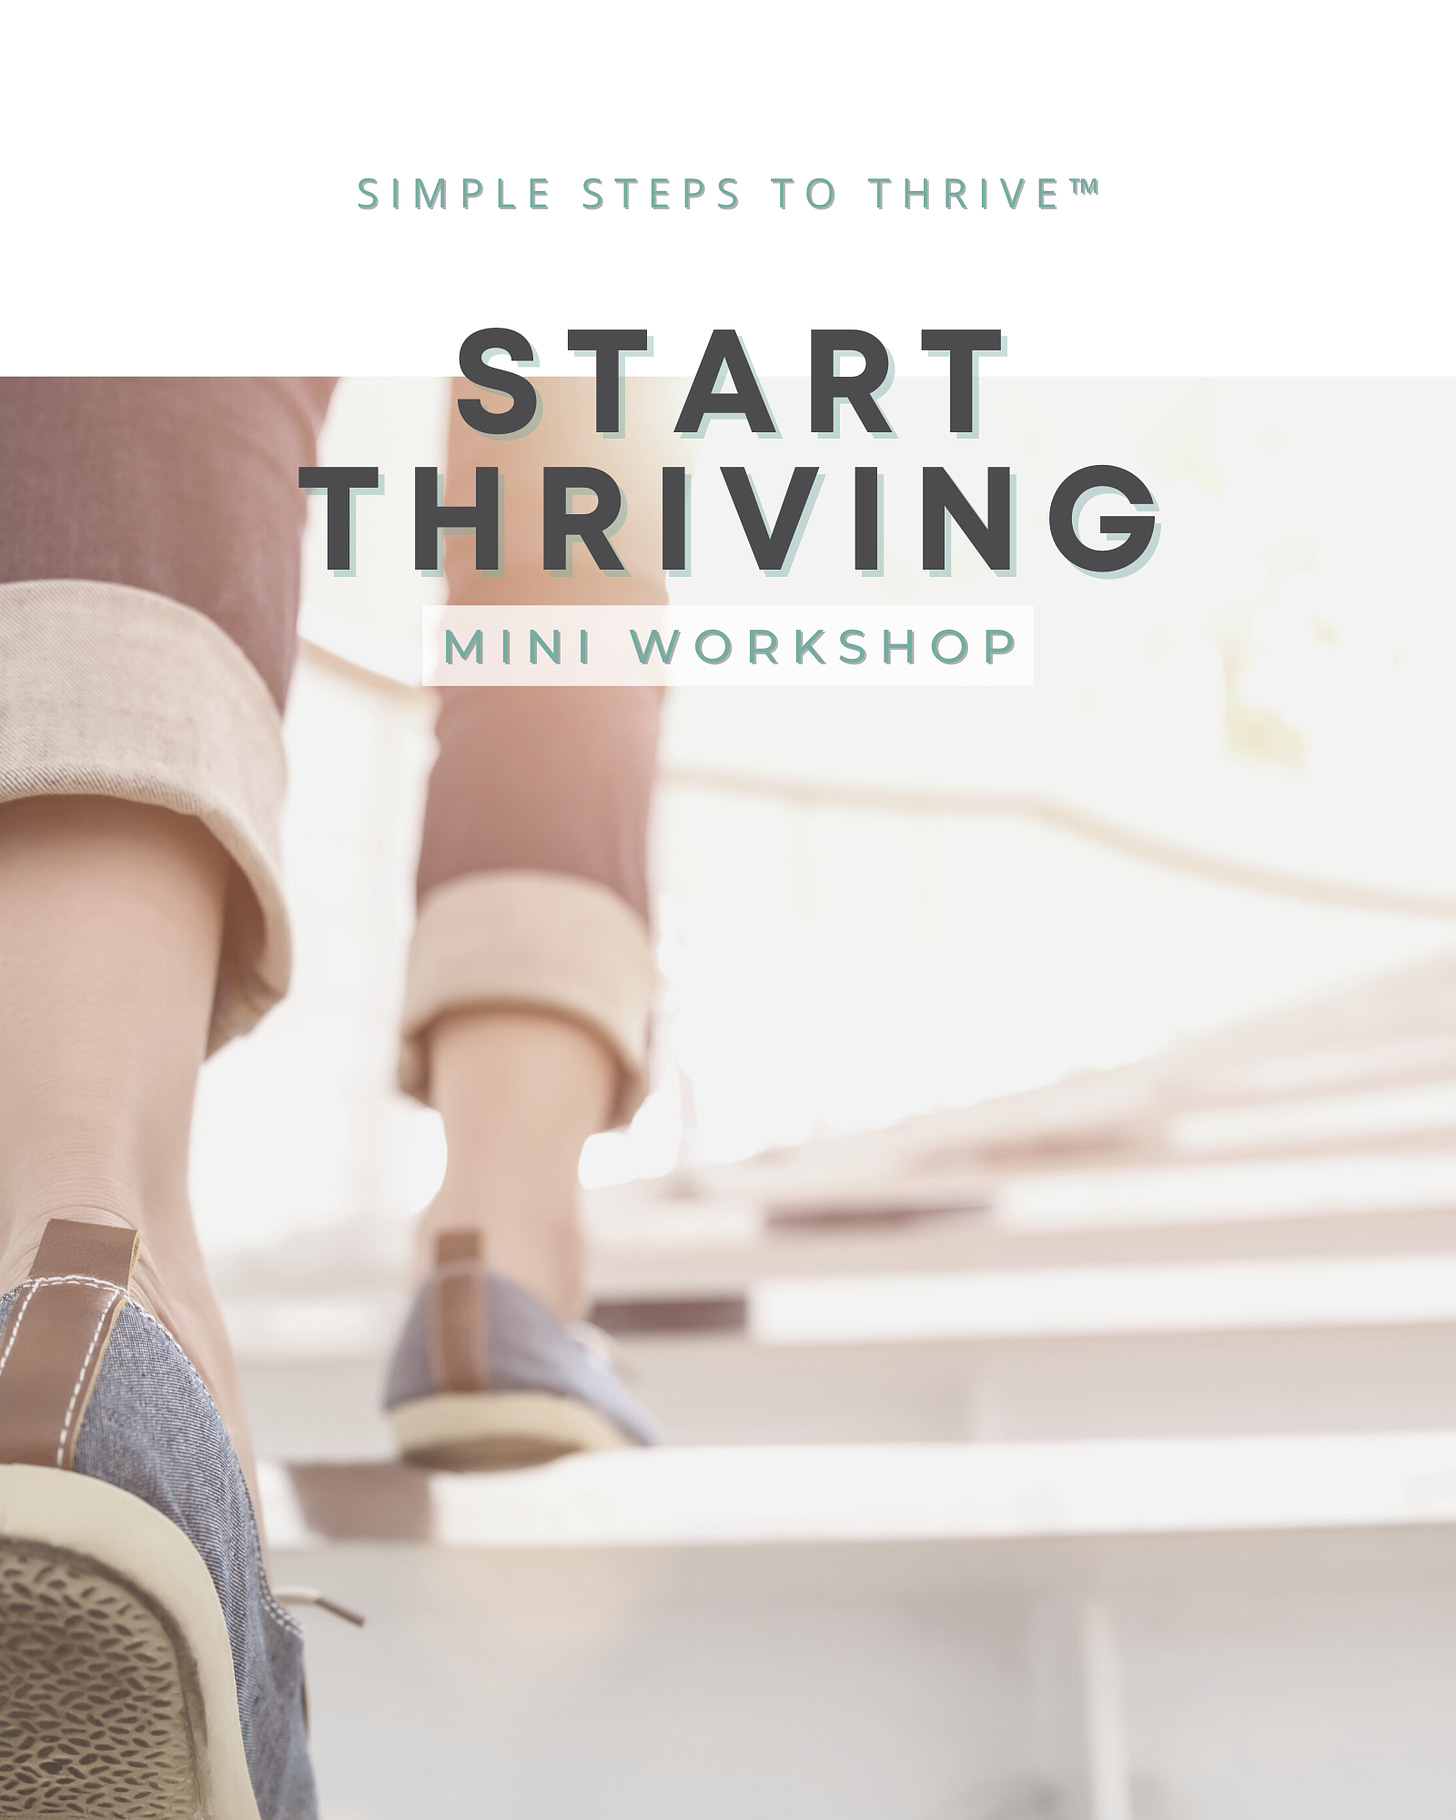 START THRIVING mini workshop - SimpleStepsToThrive.com.png